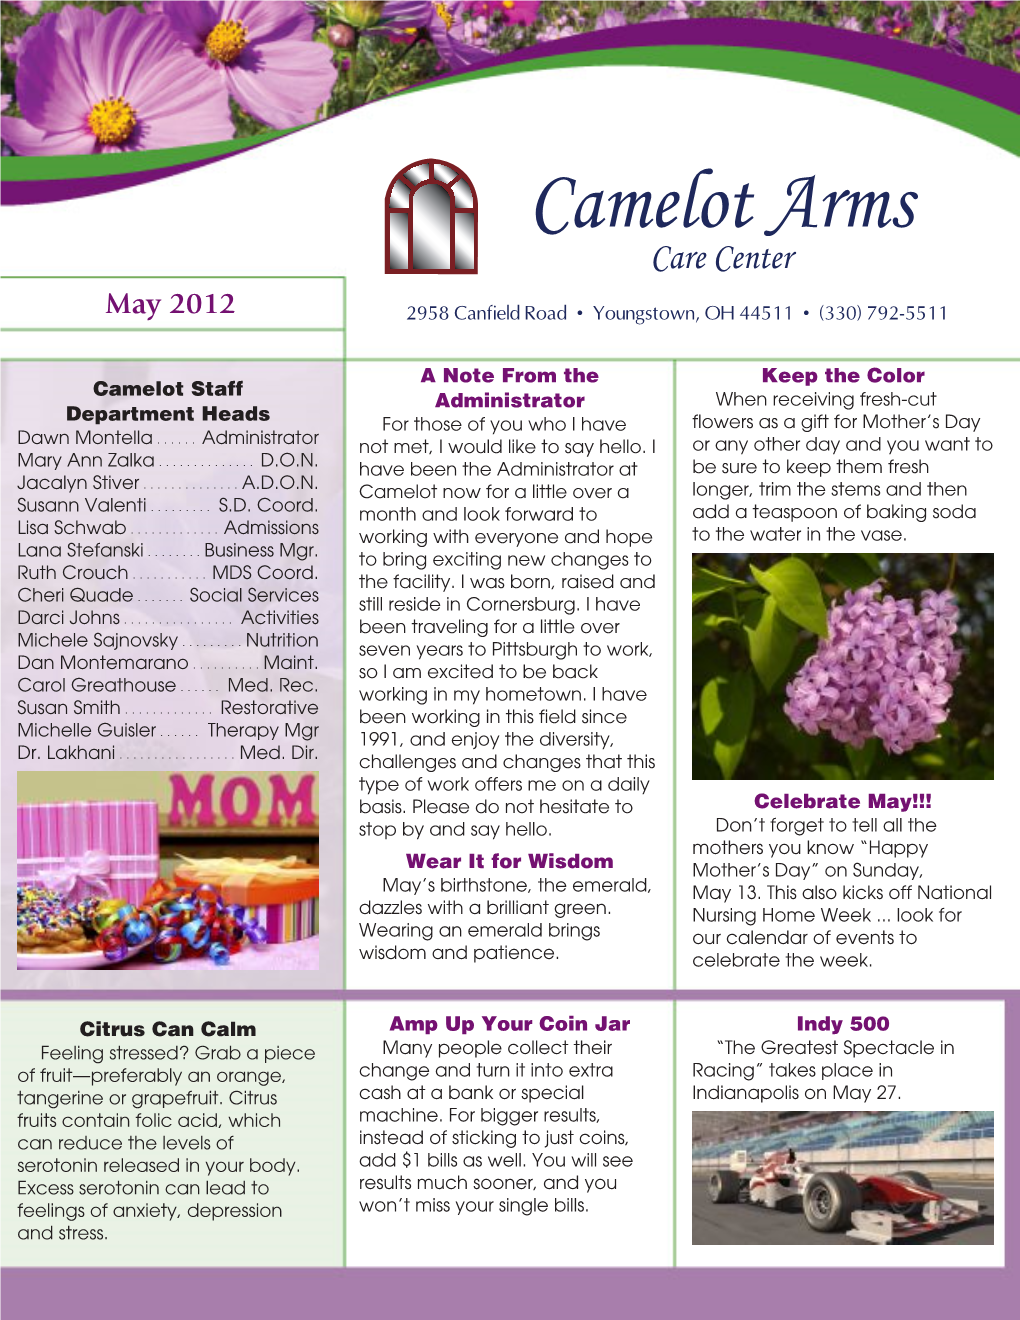 Camelot Arms Care Center